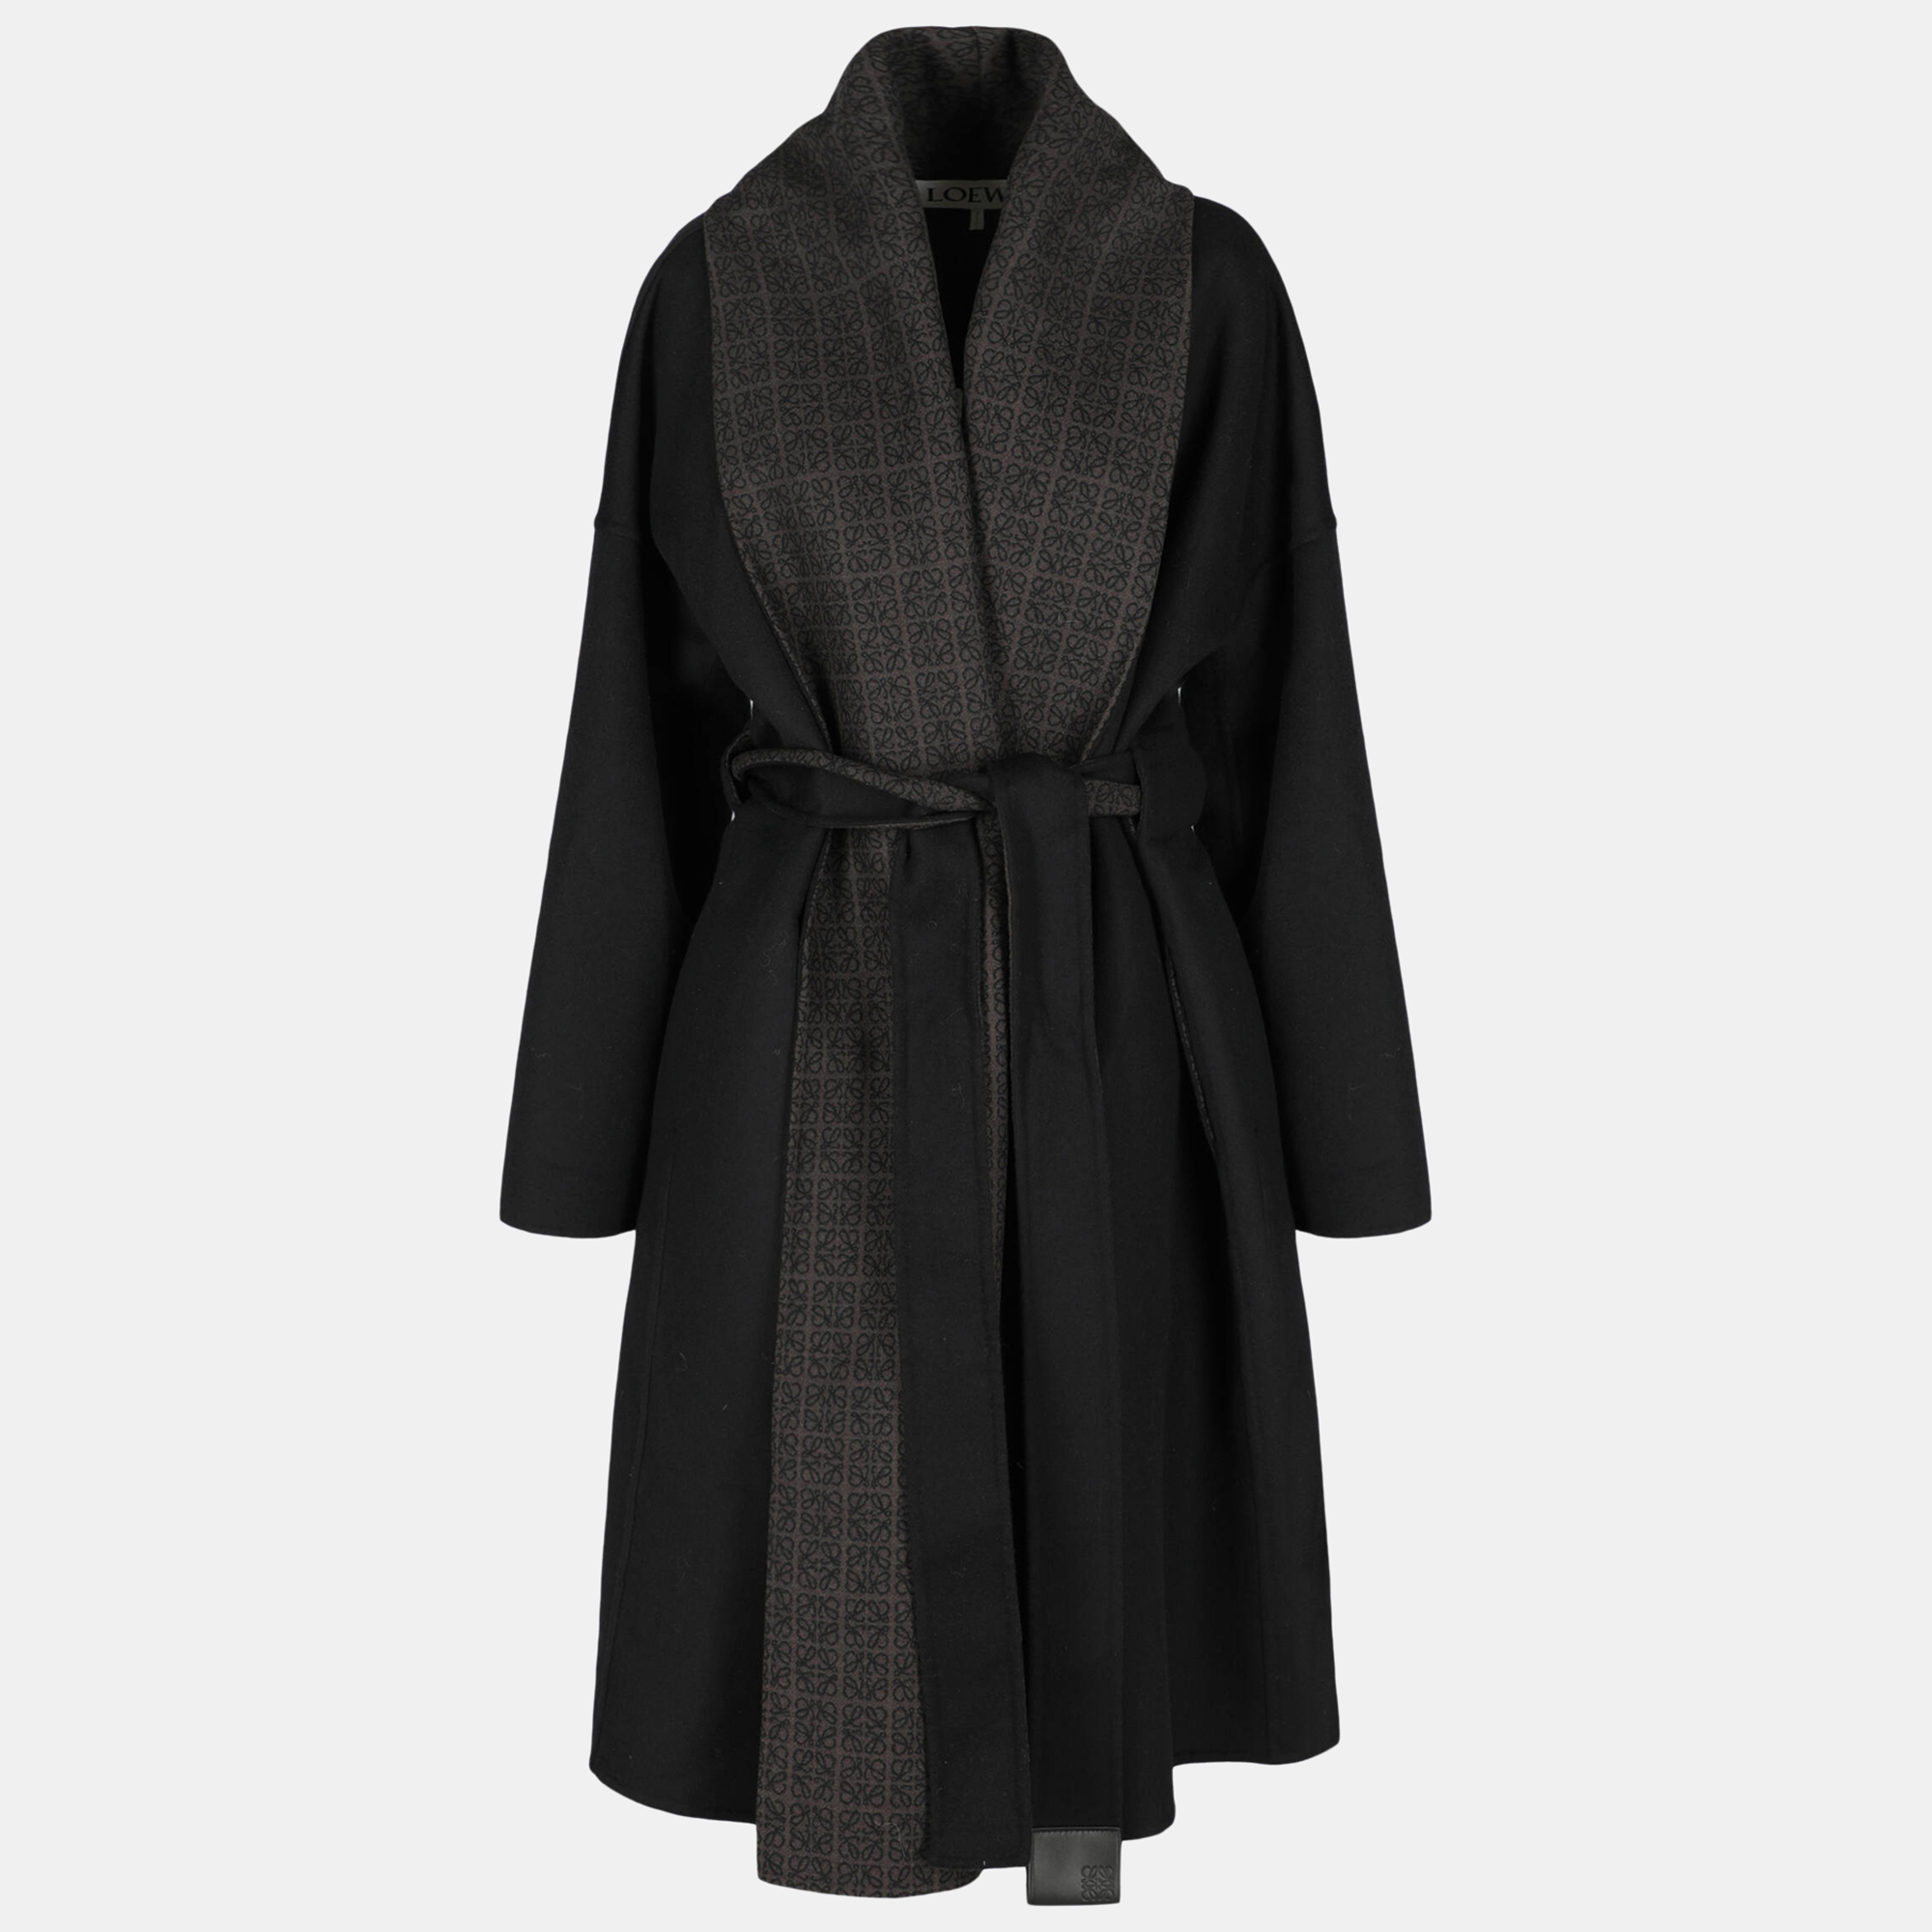 Loewe  Women's Wool Single Breasted Coat - Black - S